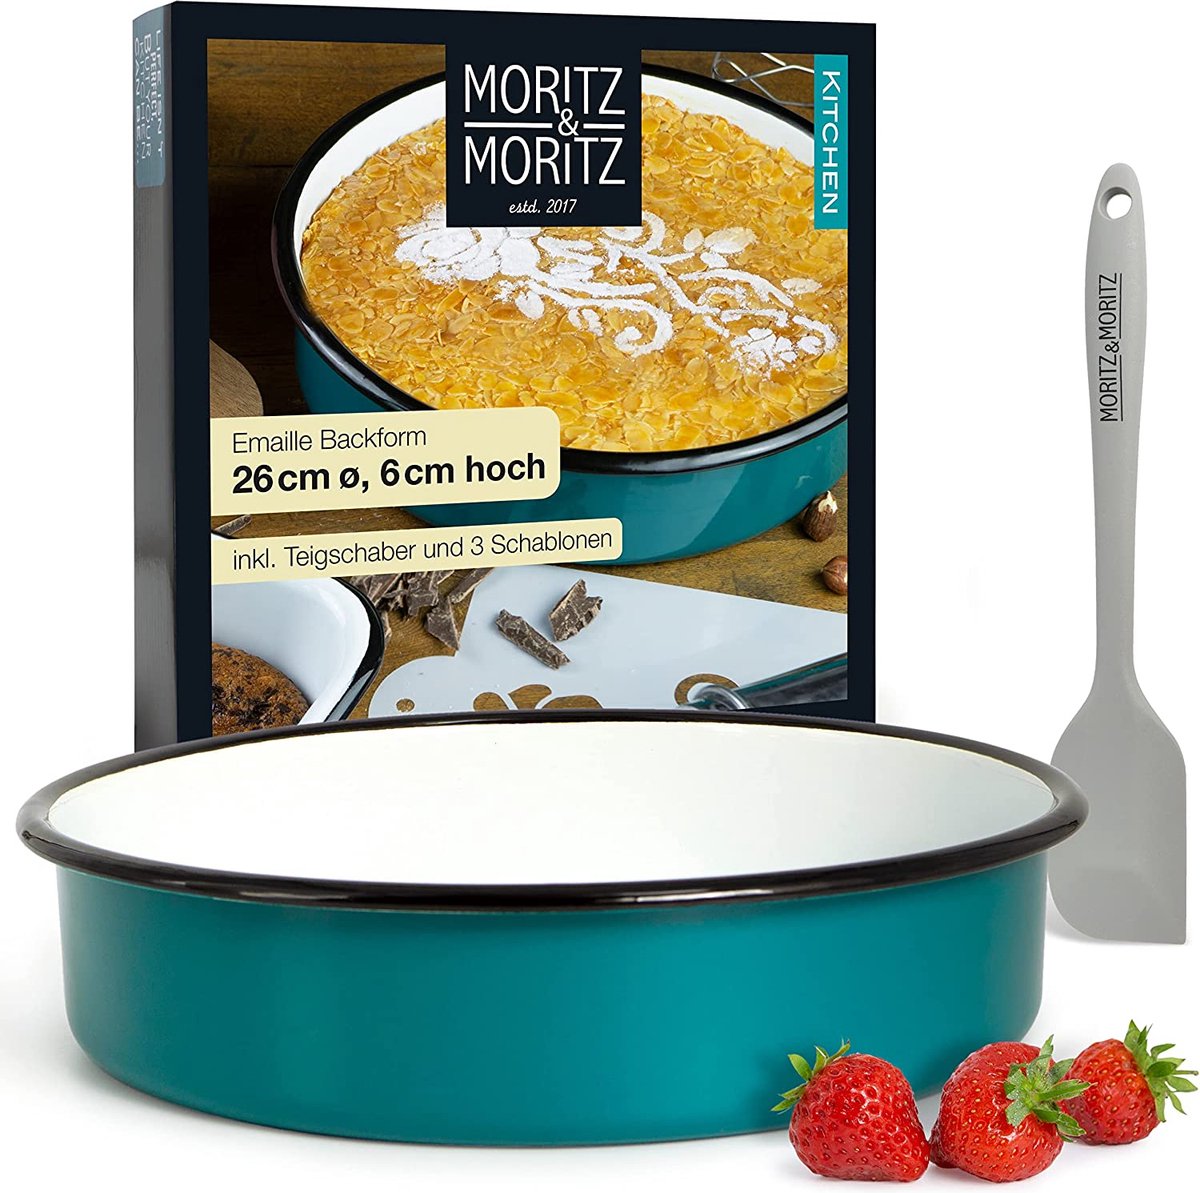 Moritz & Moritz Cake vorm 26cm rond email - bakvorm rond voor cake en taarten - ook als emaille kom voor salade - Incl. deegschraper, 3 decoratieve sjablonen en receptenboekje